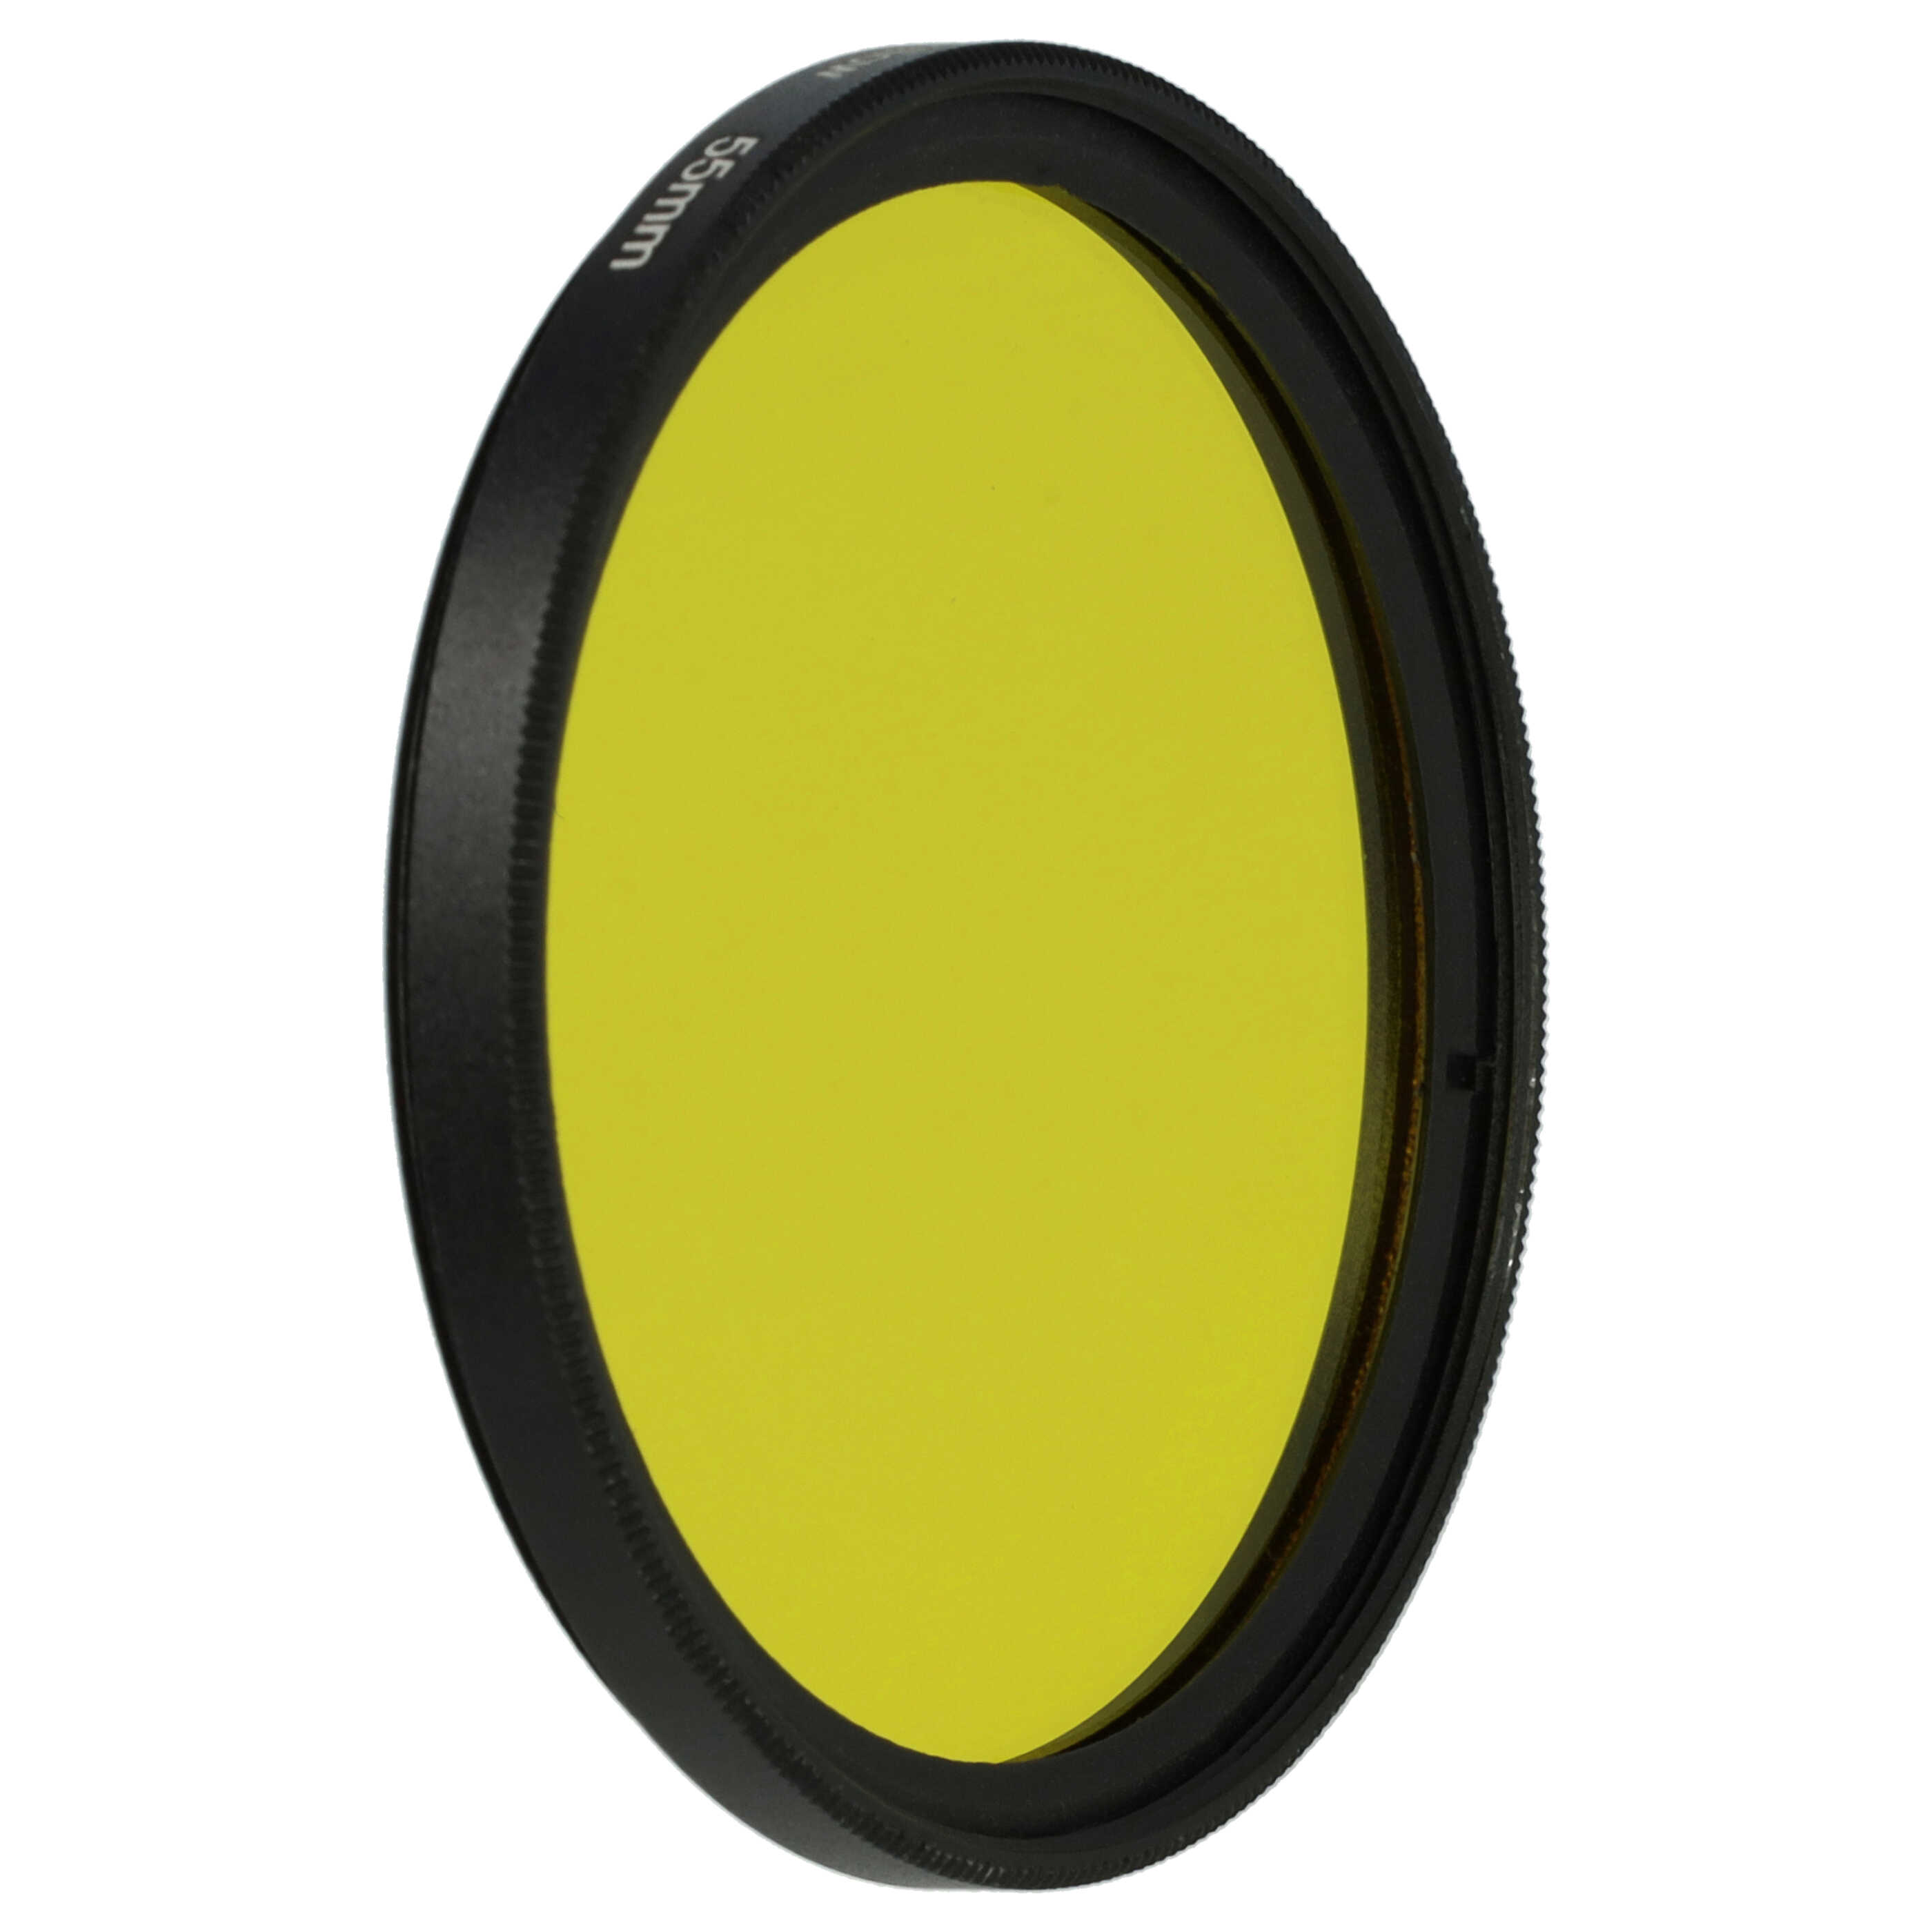 Filtro de color para objetivo de cámara con rosca de filtro de 55 mm - Filtro amarillo